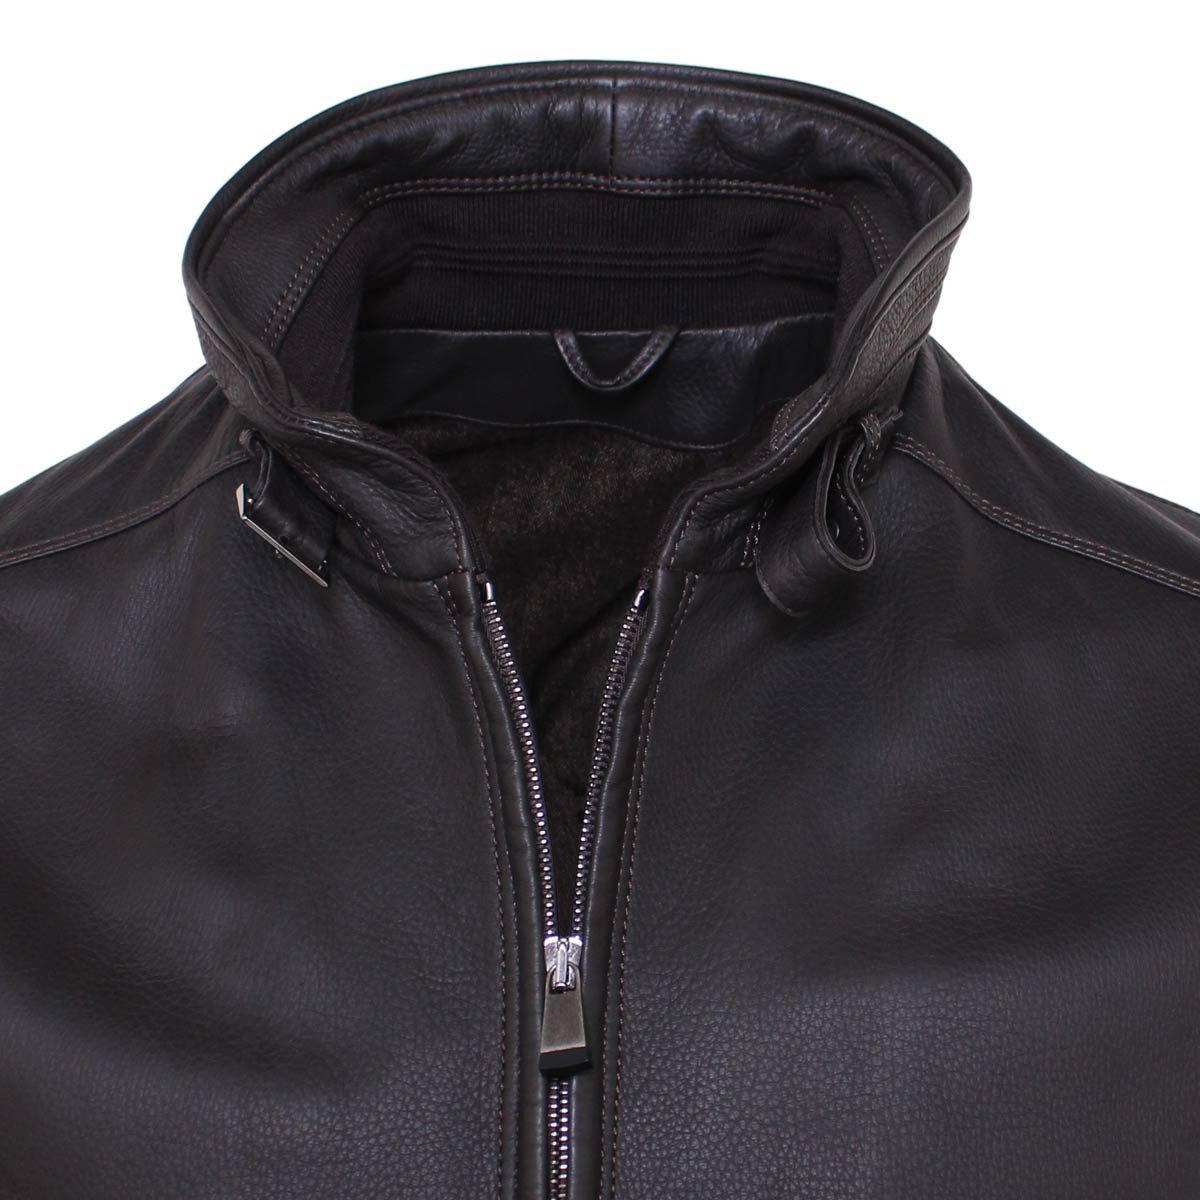 Dark Brown Bomber Style Deerskin Leather Jacket  Robert Old   